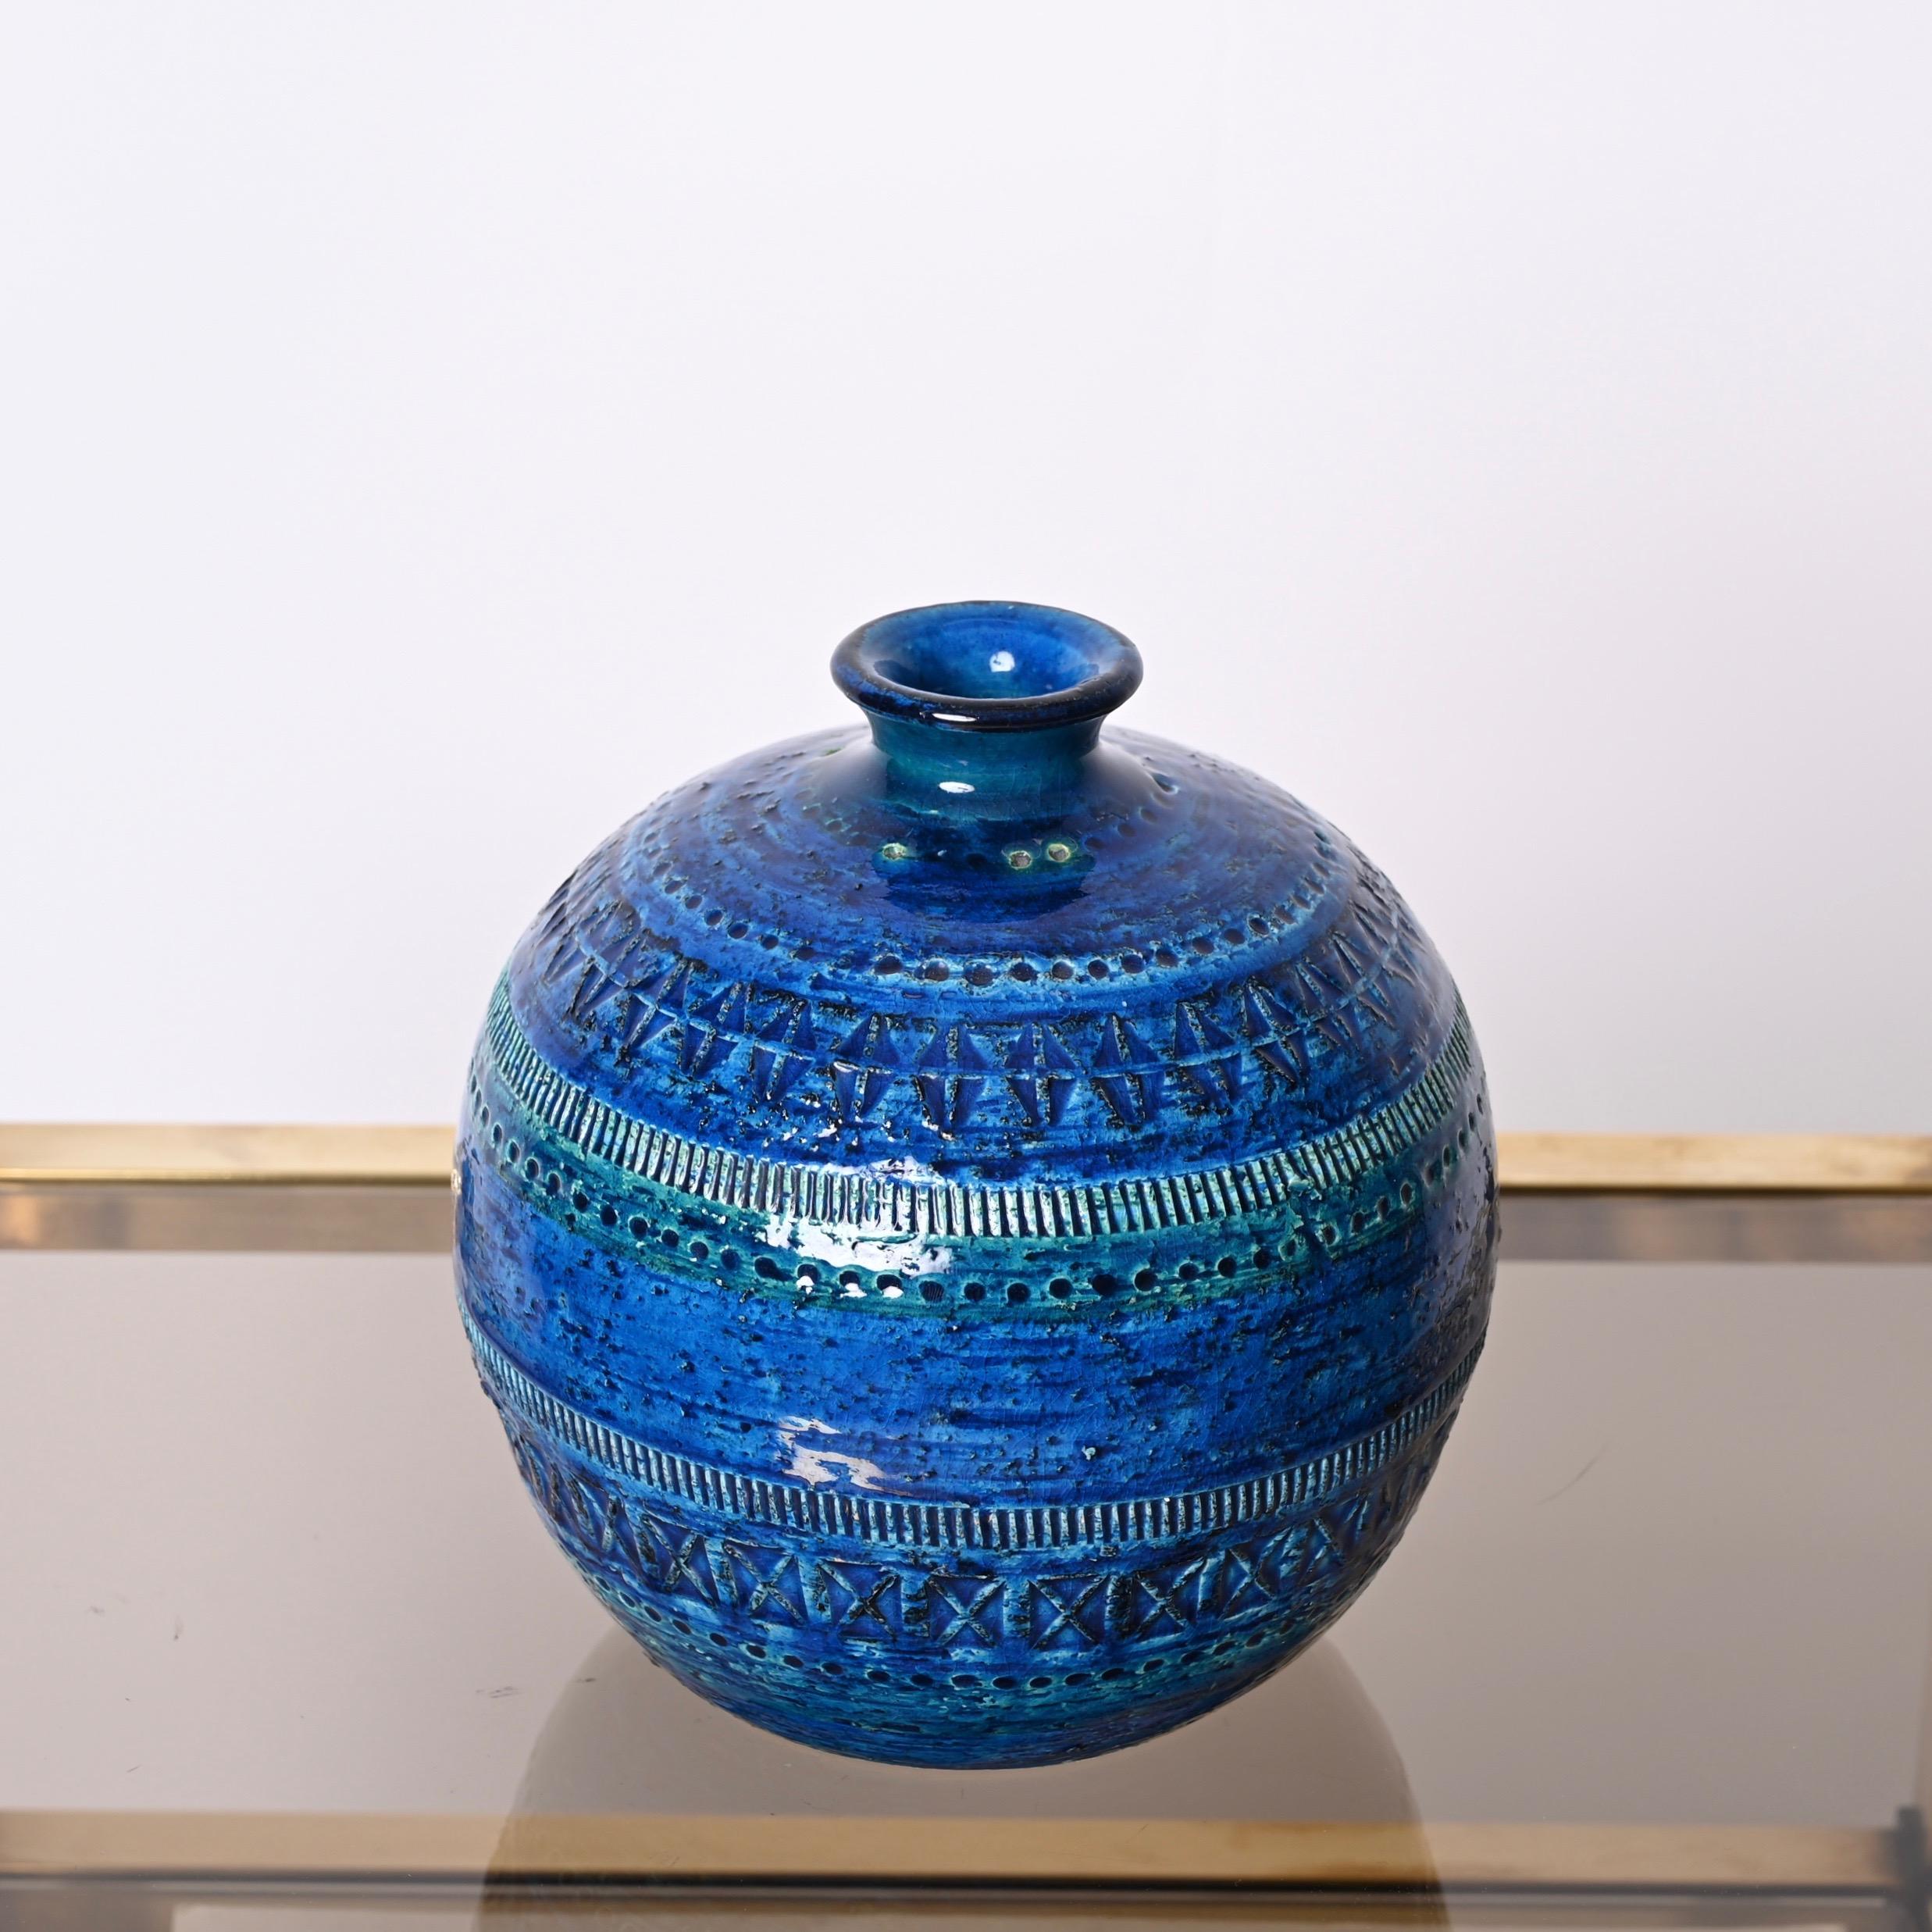 Aldo Londi Terracotta Ceramic Rimini Blue Vase for Bitossi, Italy, 1960s For Sale 6